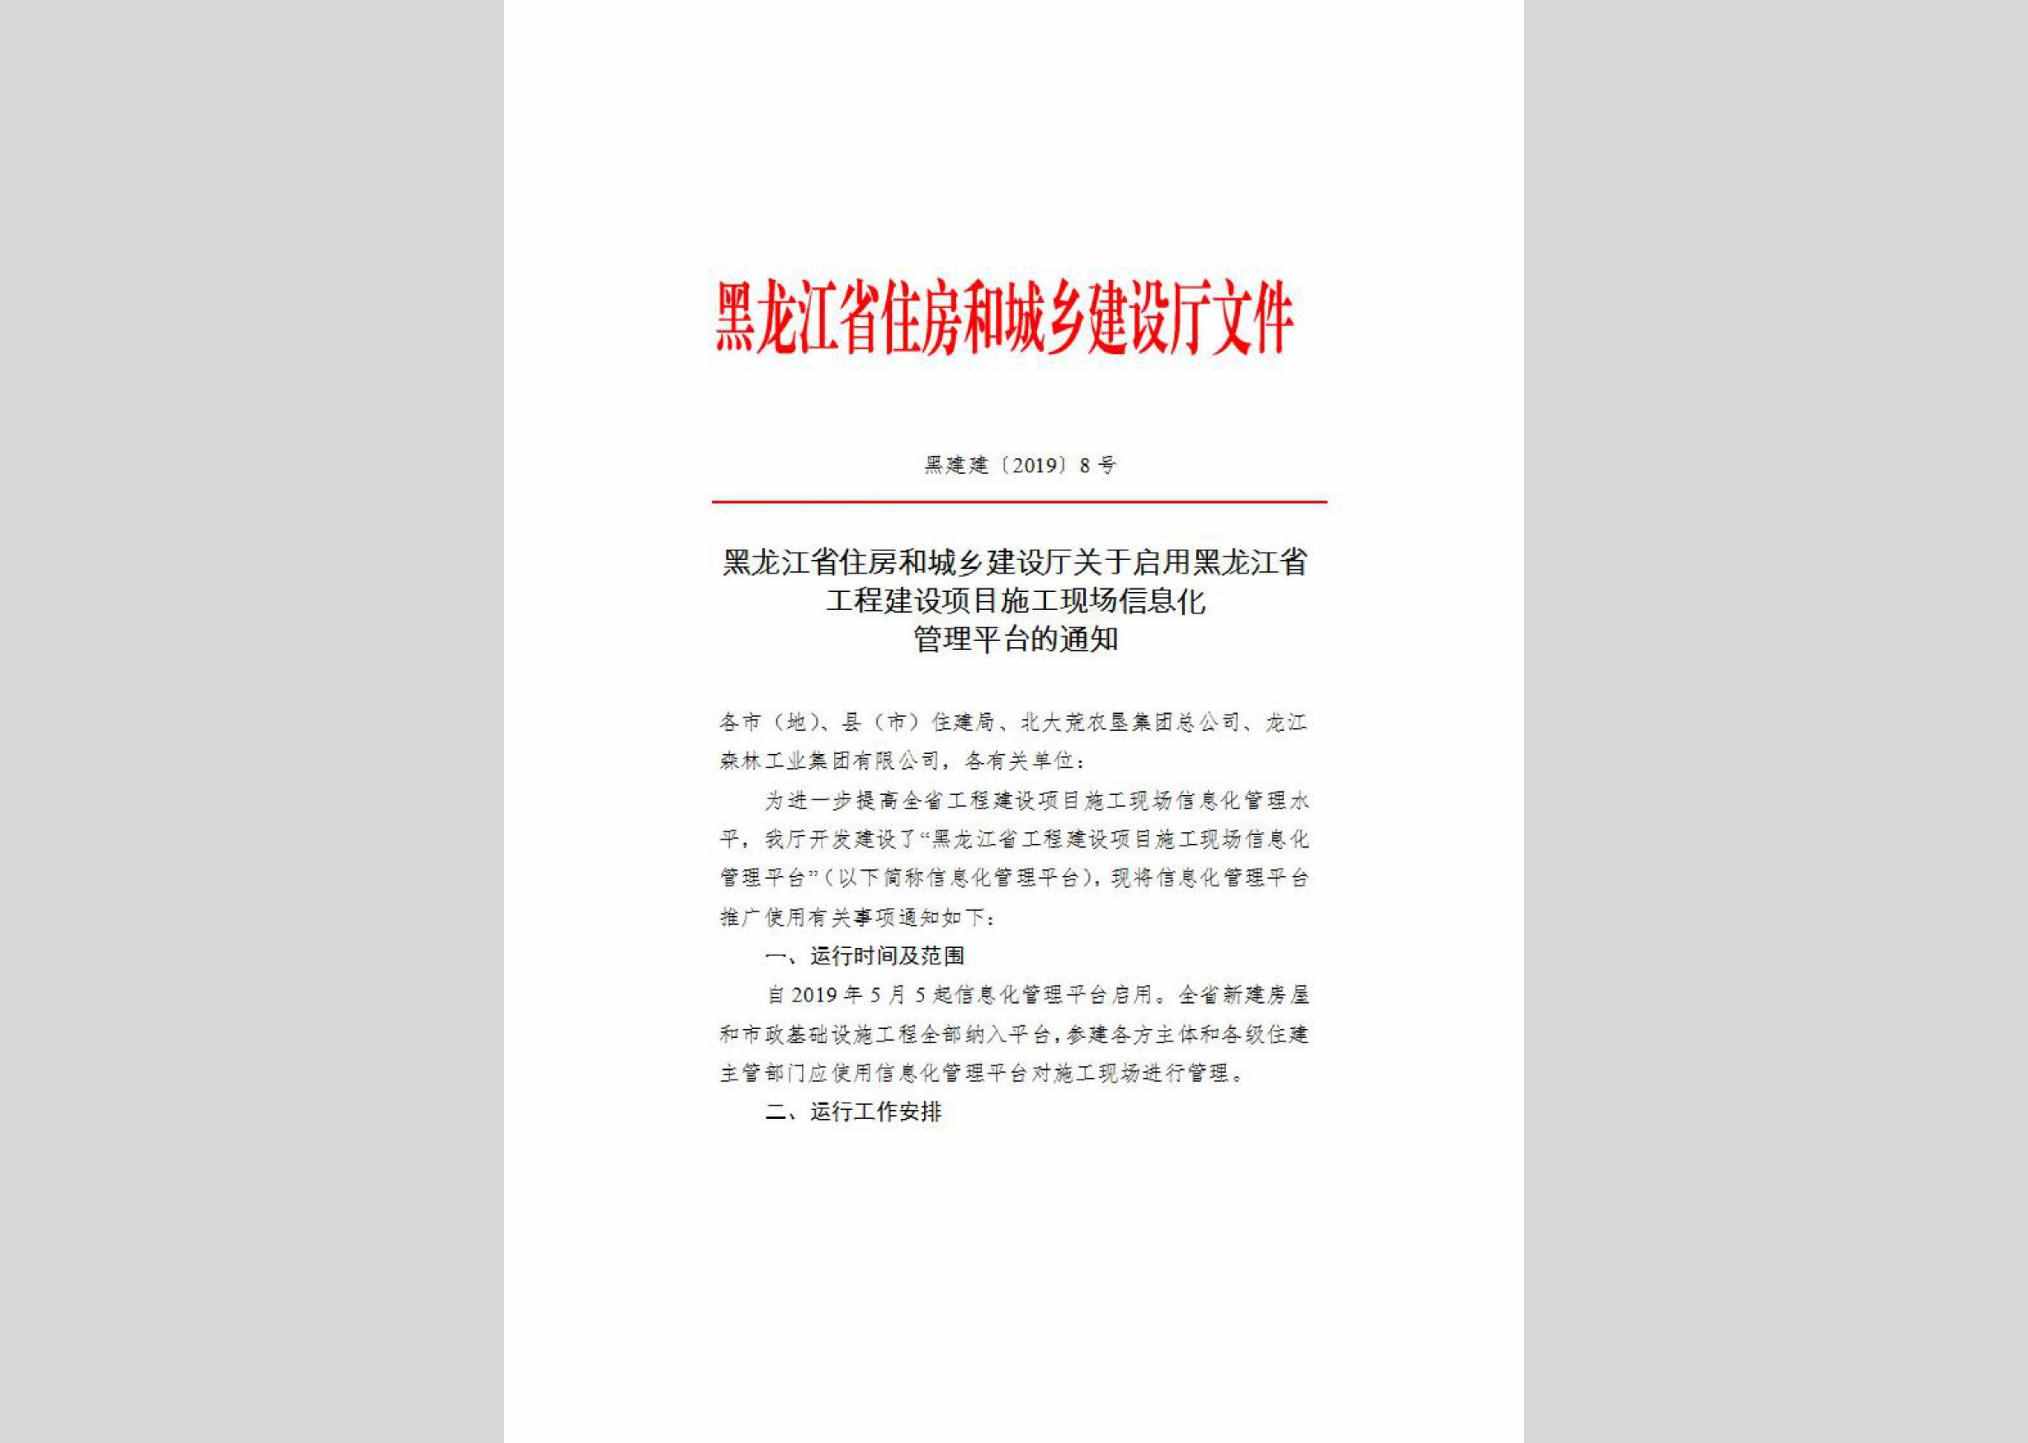 黑建建[2019]8号：黑龙江省住房和城乡建设厅关于启用黑龙江省工程建设项目施工现场信息化管理平台的通知